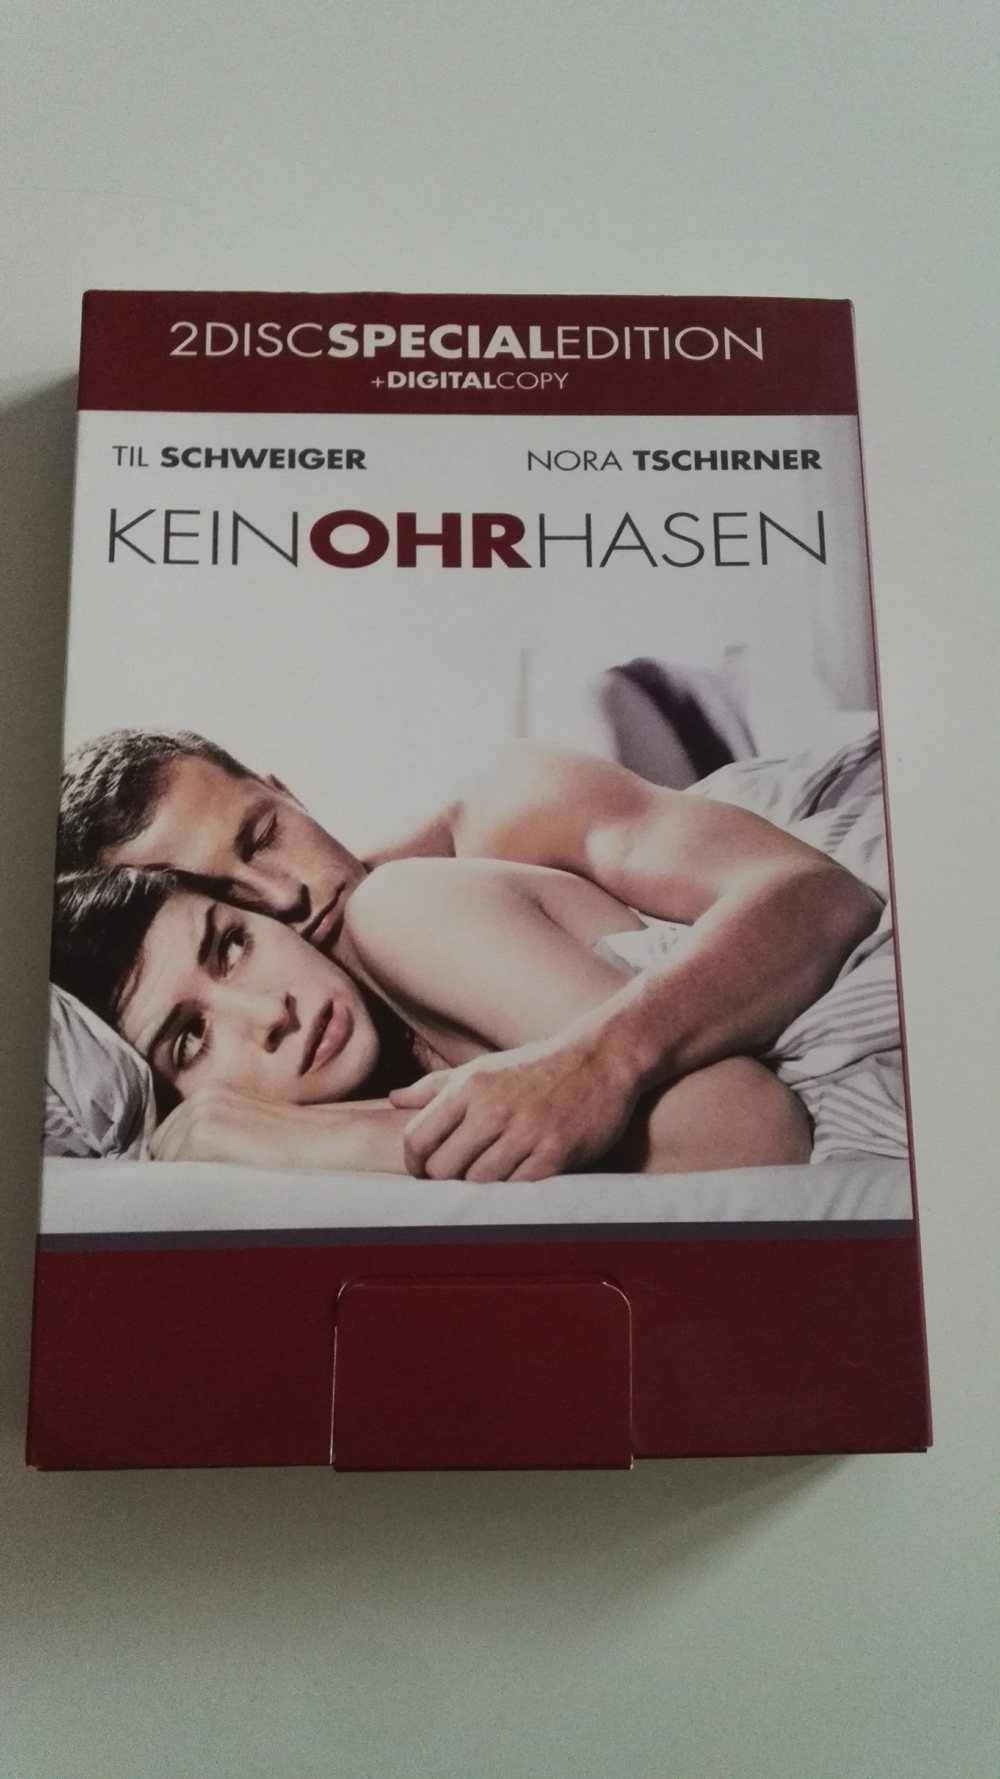 Keinohrhasen   2 DVD Special Edition   mit Til Schweiger & Nora Tschirner   Kein Ohr Hasen